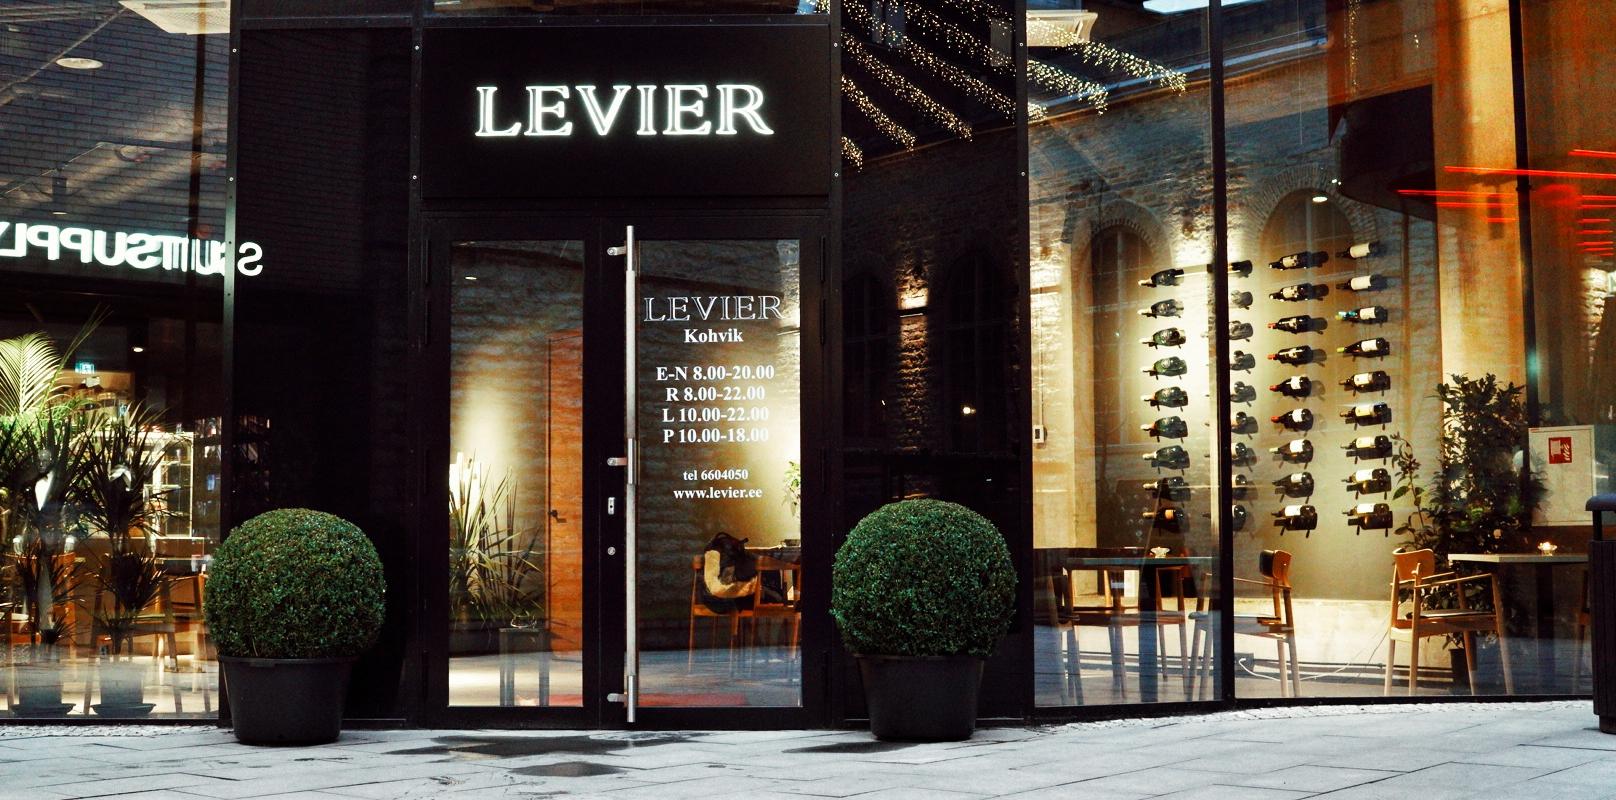 Kafejnīca "Levier"